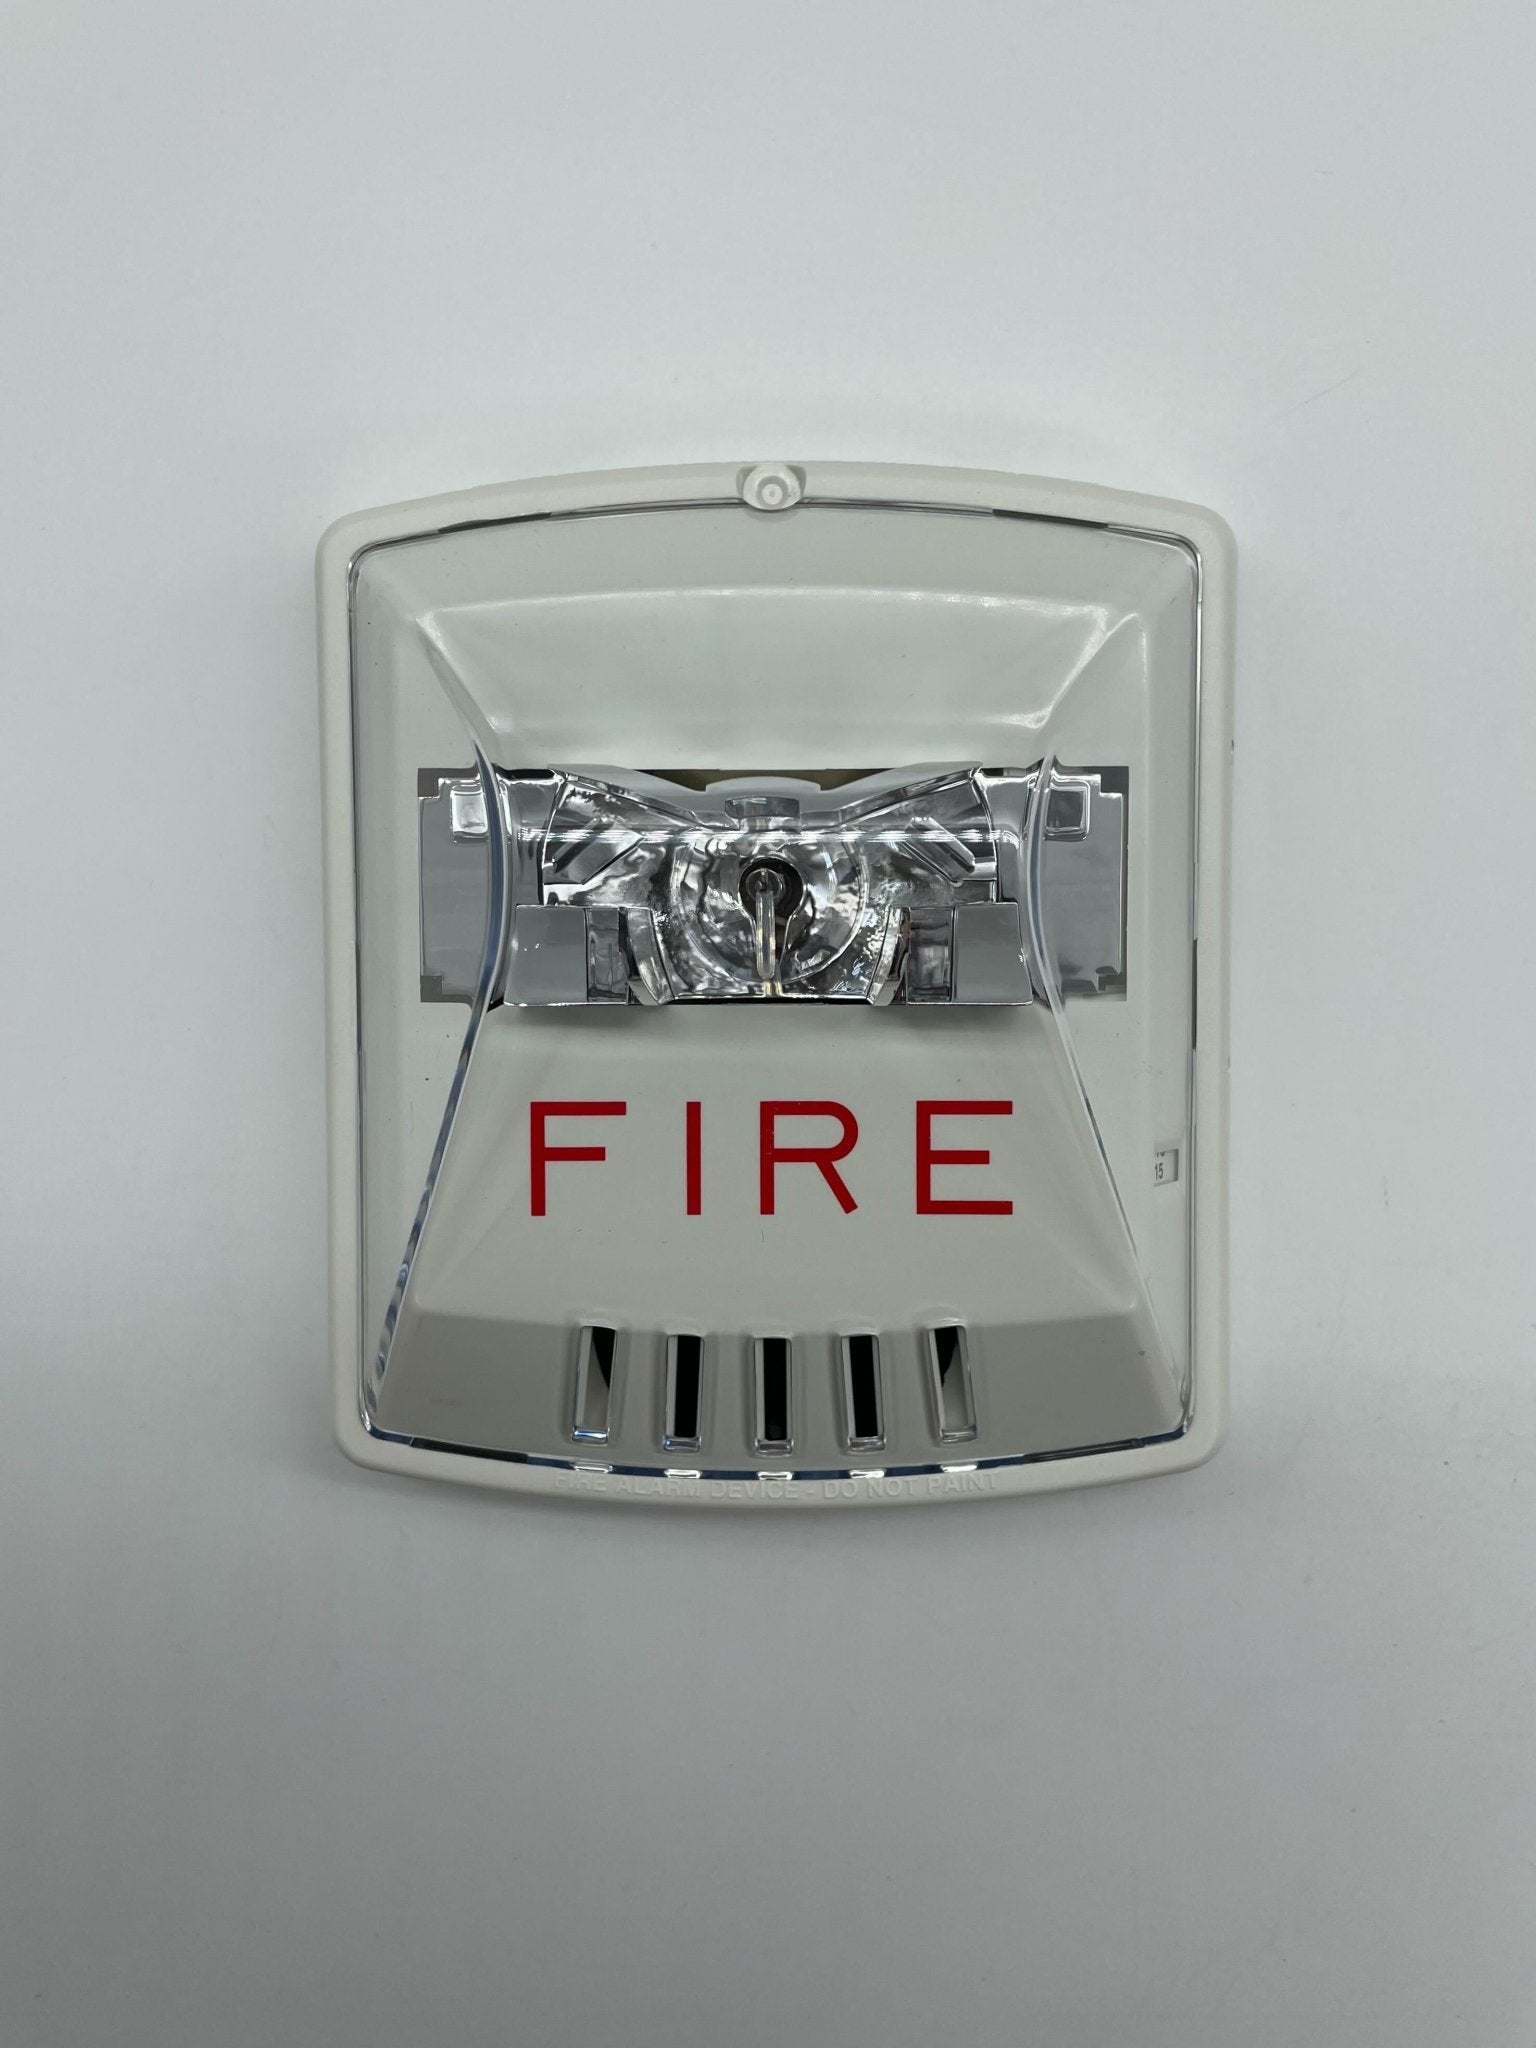 Wheelock HSW - The Fire Alarm Supplier